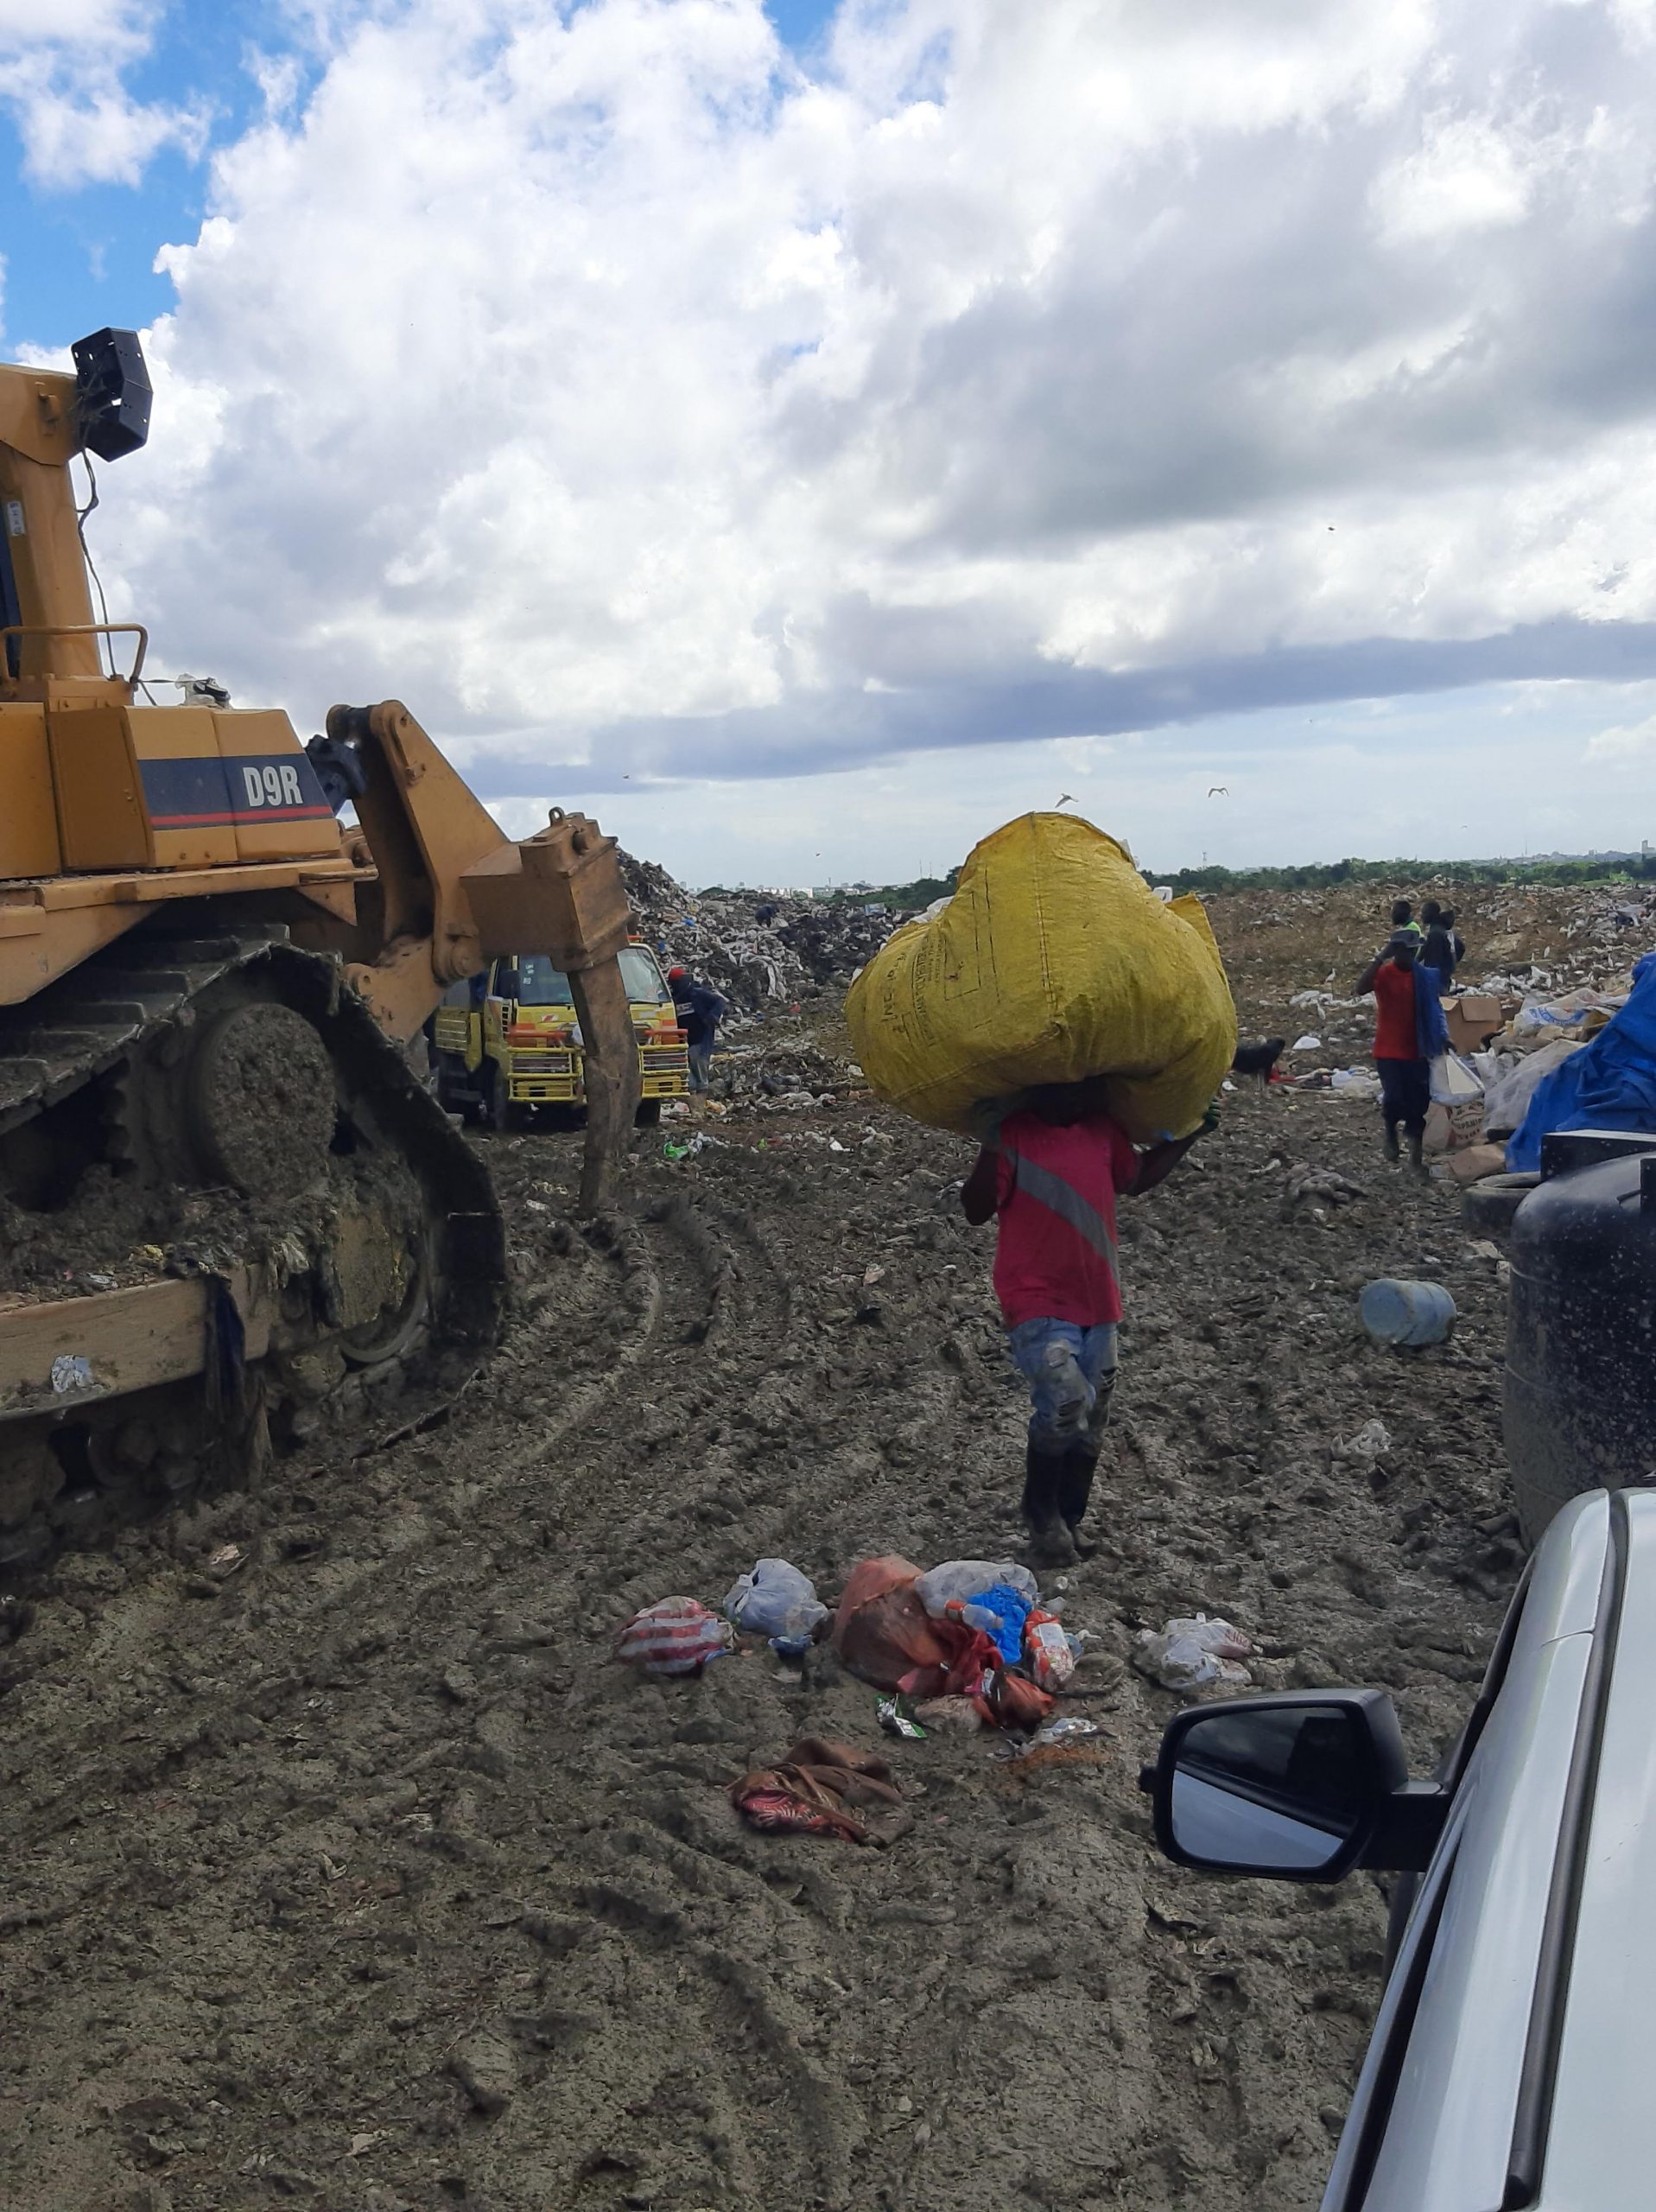 La mayoría de recolectores de residuos sólidos en República Dominicana son inmigrantes indocumentados de Haití o dominicanos sin papeles de identidad